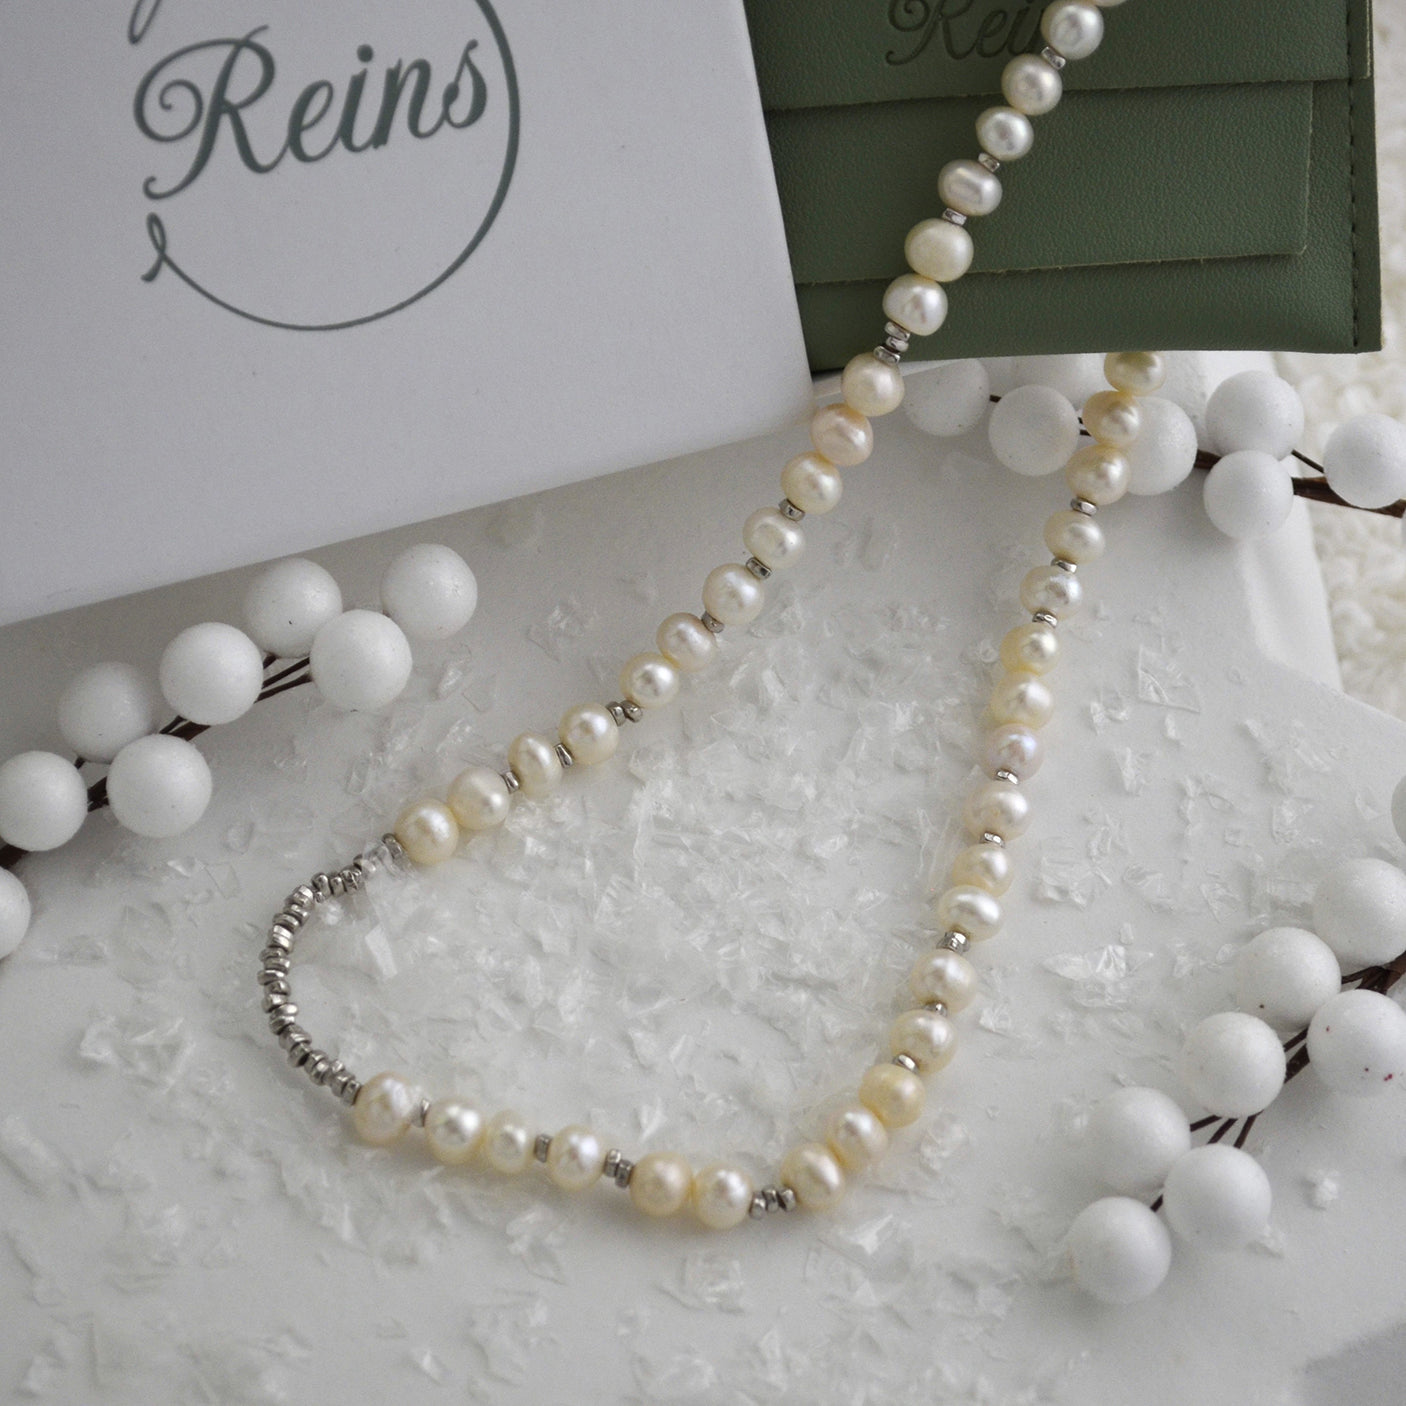 Colier din Argint Reins, cu perle naturale de apa dulce - Crushed Pearl, vedere detaliata, 01R01-0013